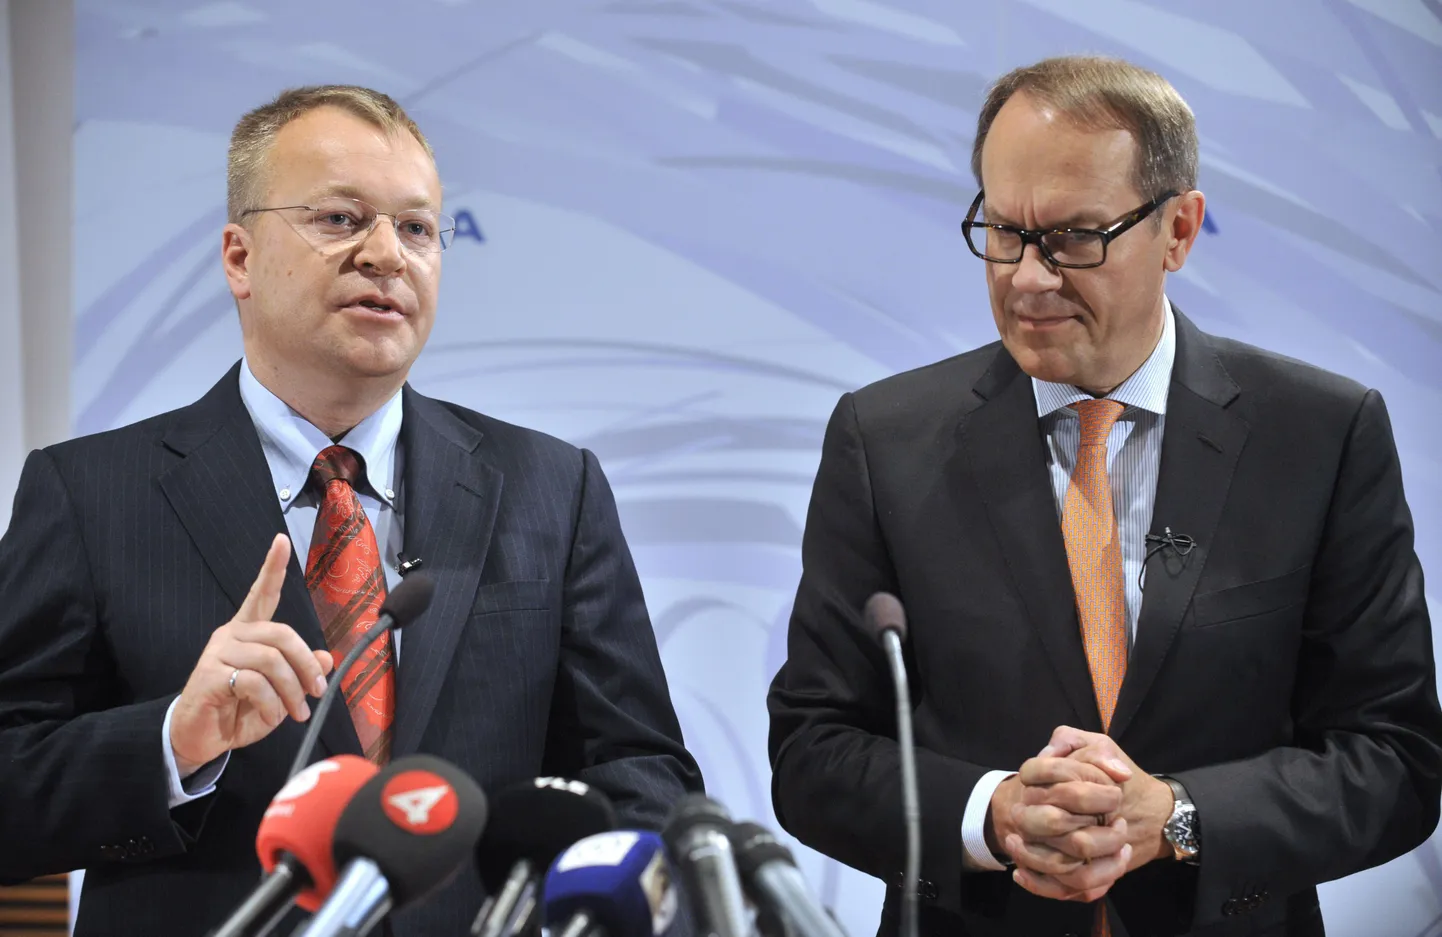 Nokia uus tegevjuht Stephen Elop (vasakul) ja Nokia direktorite nõukogu esimees Jorma Ollila.